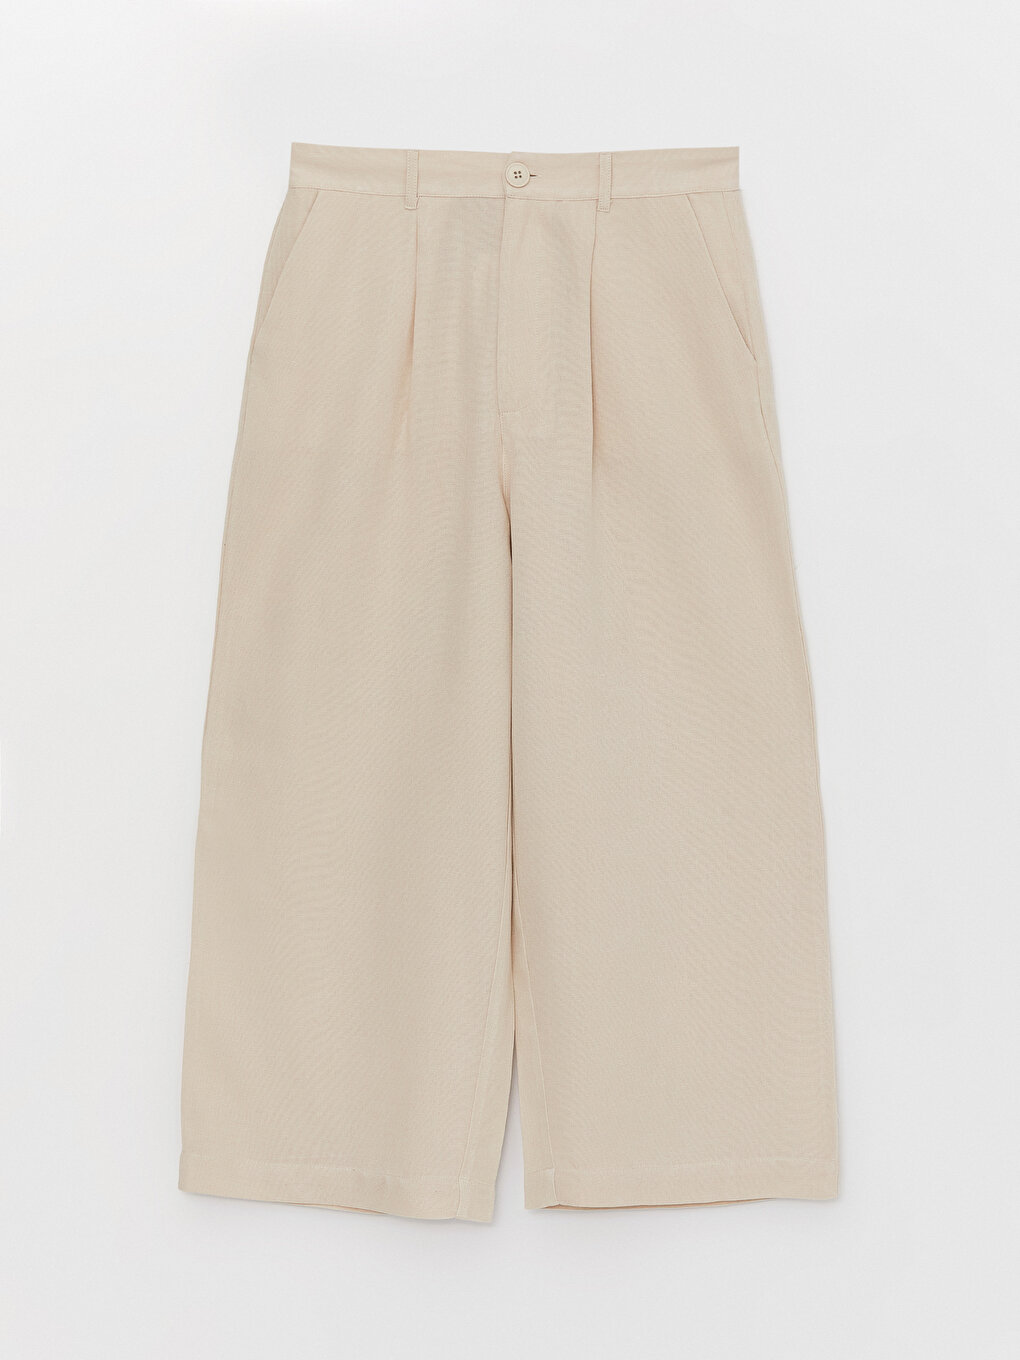 Relaxed Fit Plain Linen Blend Women's Capri Pants -S3H381Z8-FWZ